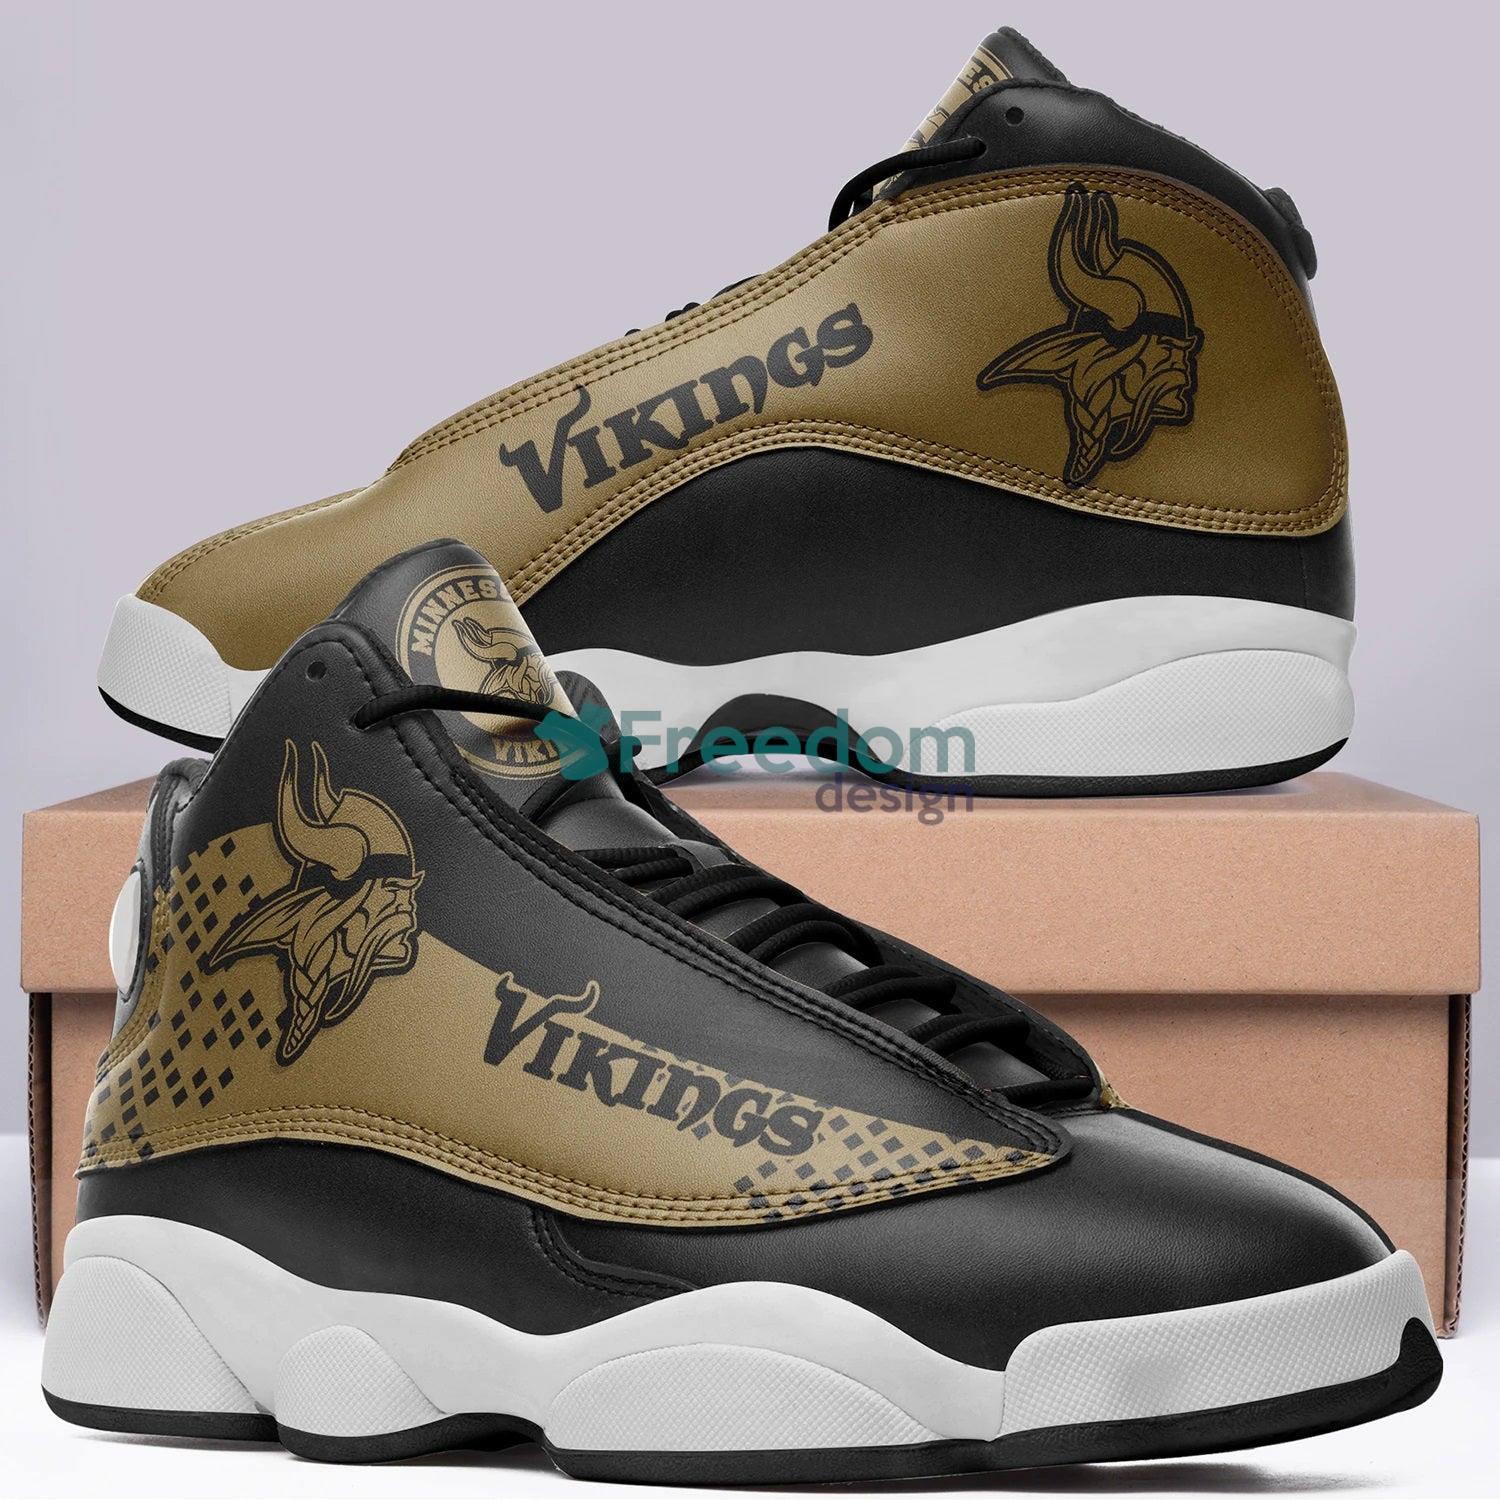 Minnesota Vikings Lover Team Air Jordan 13 Sneaker Shoes For Fans